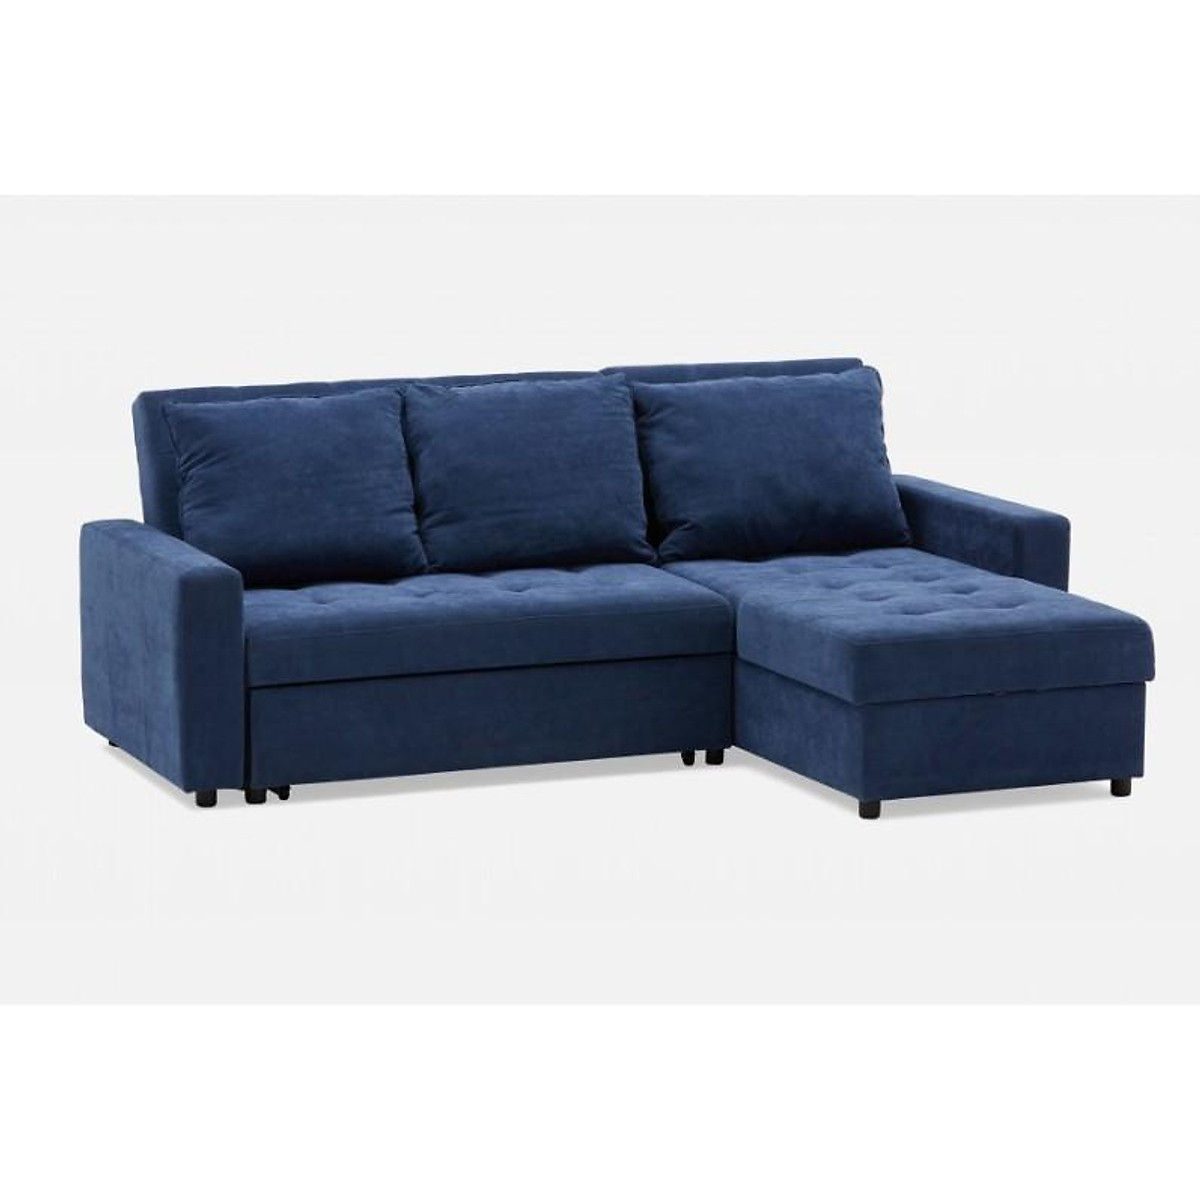 Ghế sofa giường kéo Tundo màu xanh